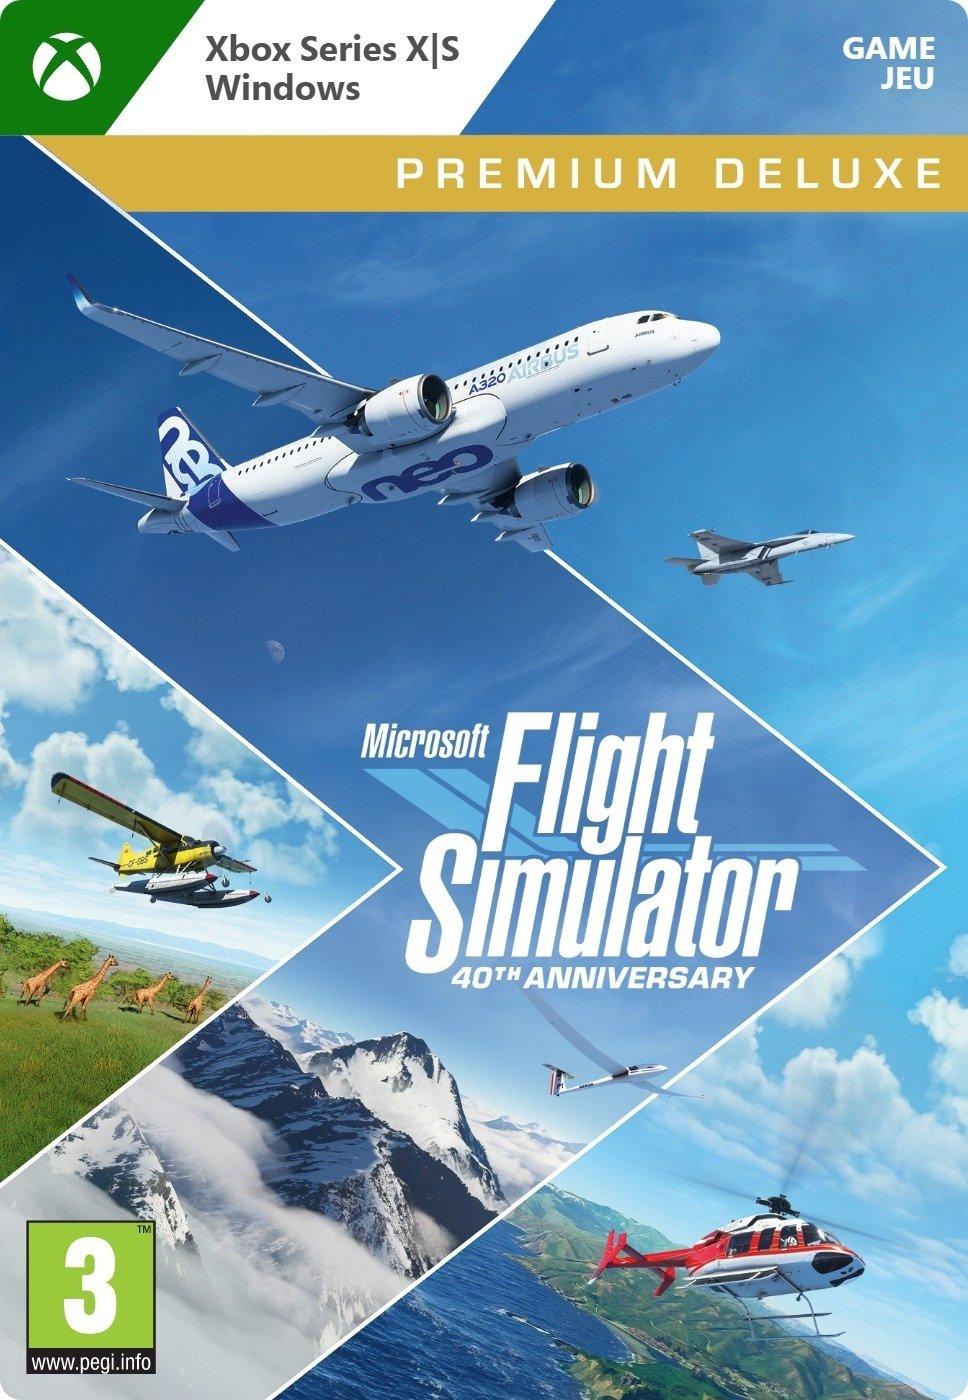 Microsoft Flight Simulator 40th Anniversary Premium Deluxe Edition - Xbox Series X/Win10 - Game | G7Q-00135 (3b8672d9-0f6c-b344-914e-5ffd4d4f820e)